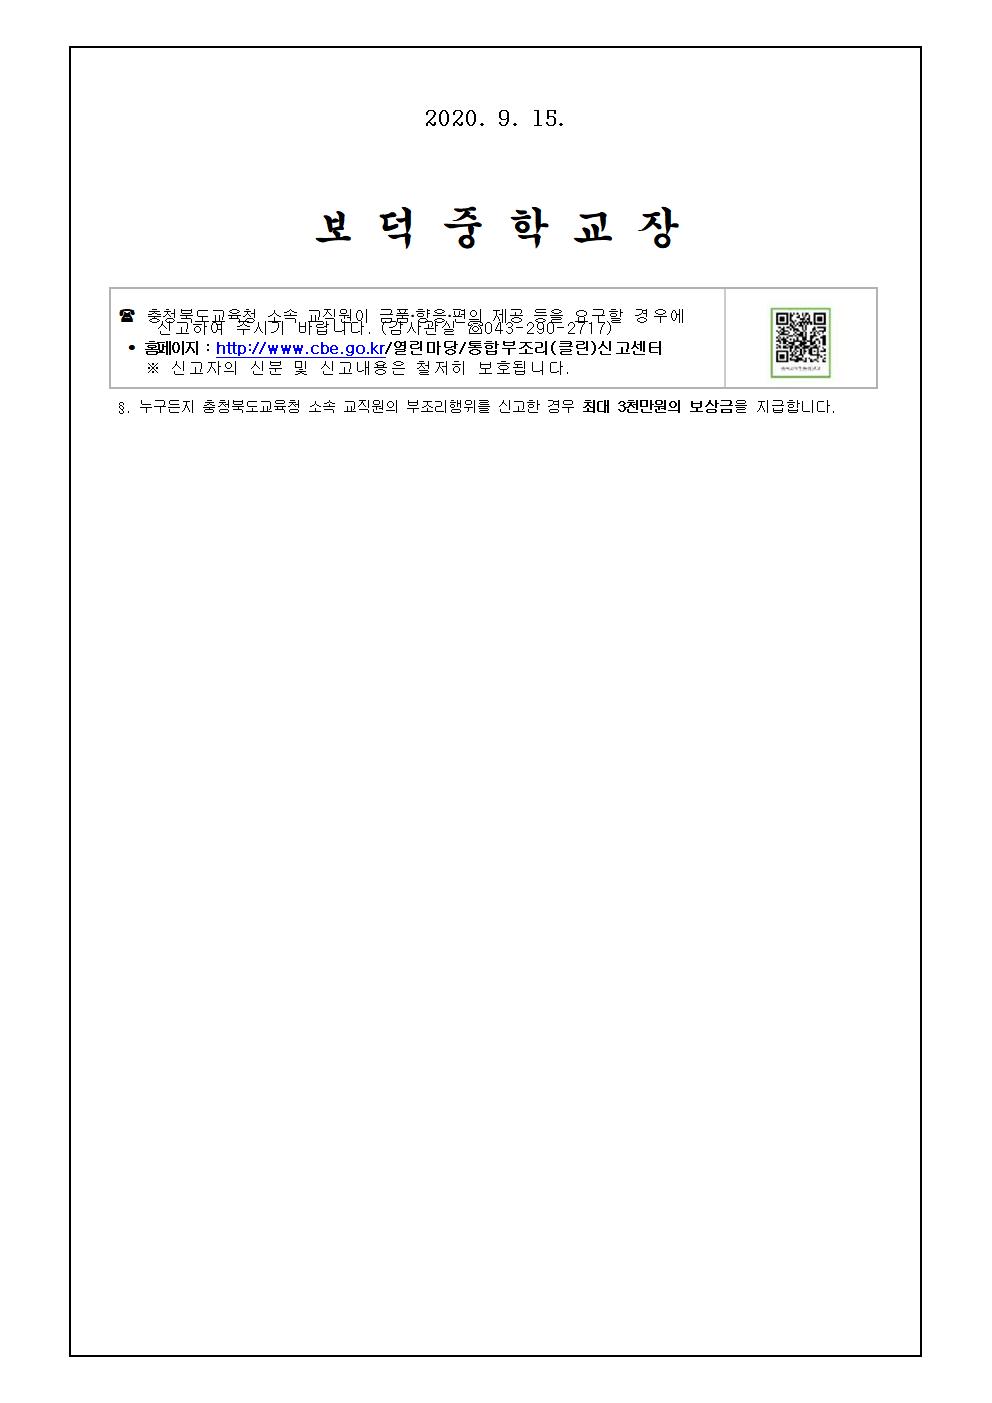 2020. 2학기 학생평가 운영 안내 가정통신문002